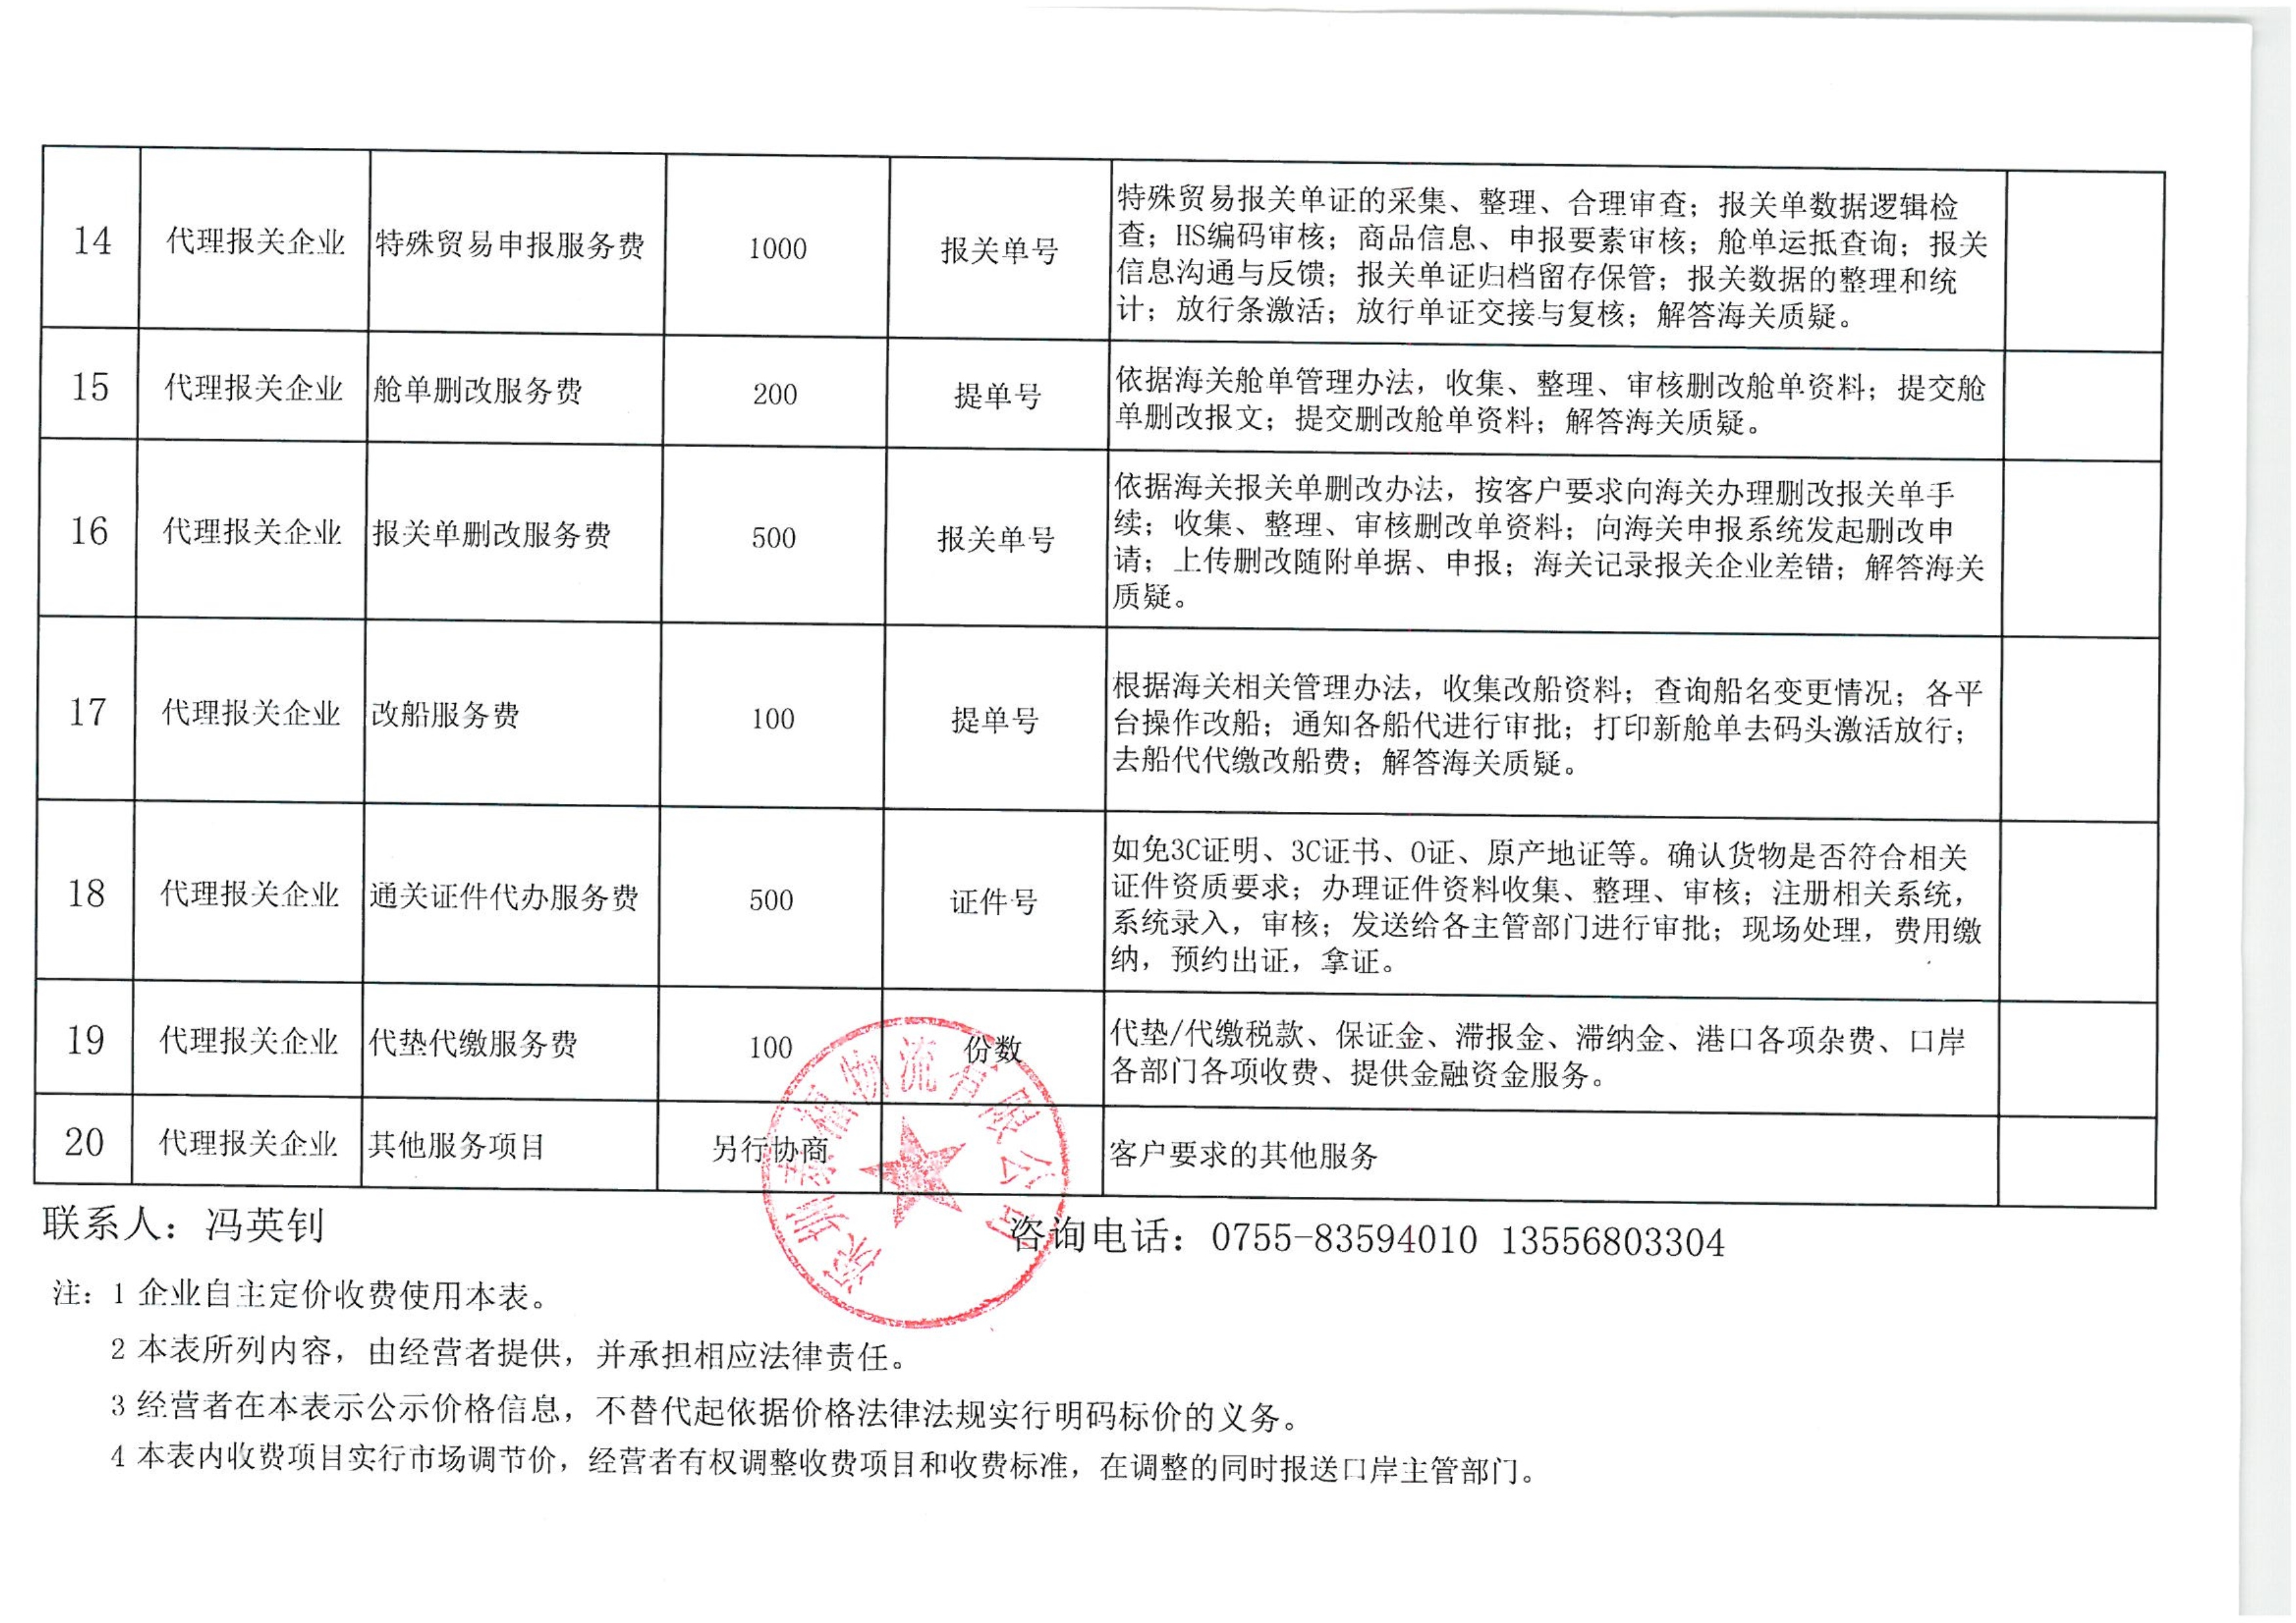 深圳泰福物流有限公司收费目录清单.pdf_3_1.jpg